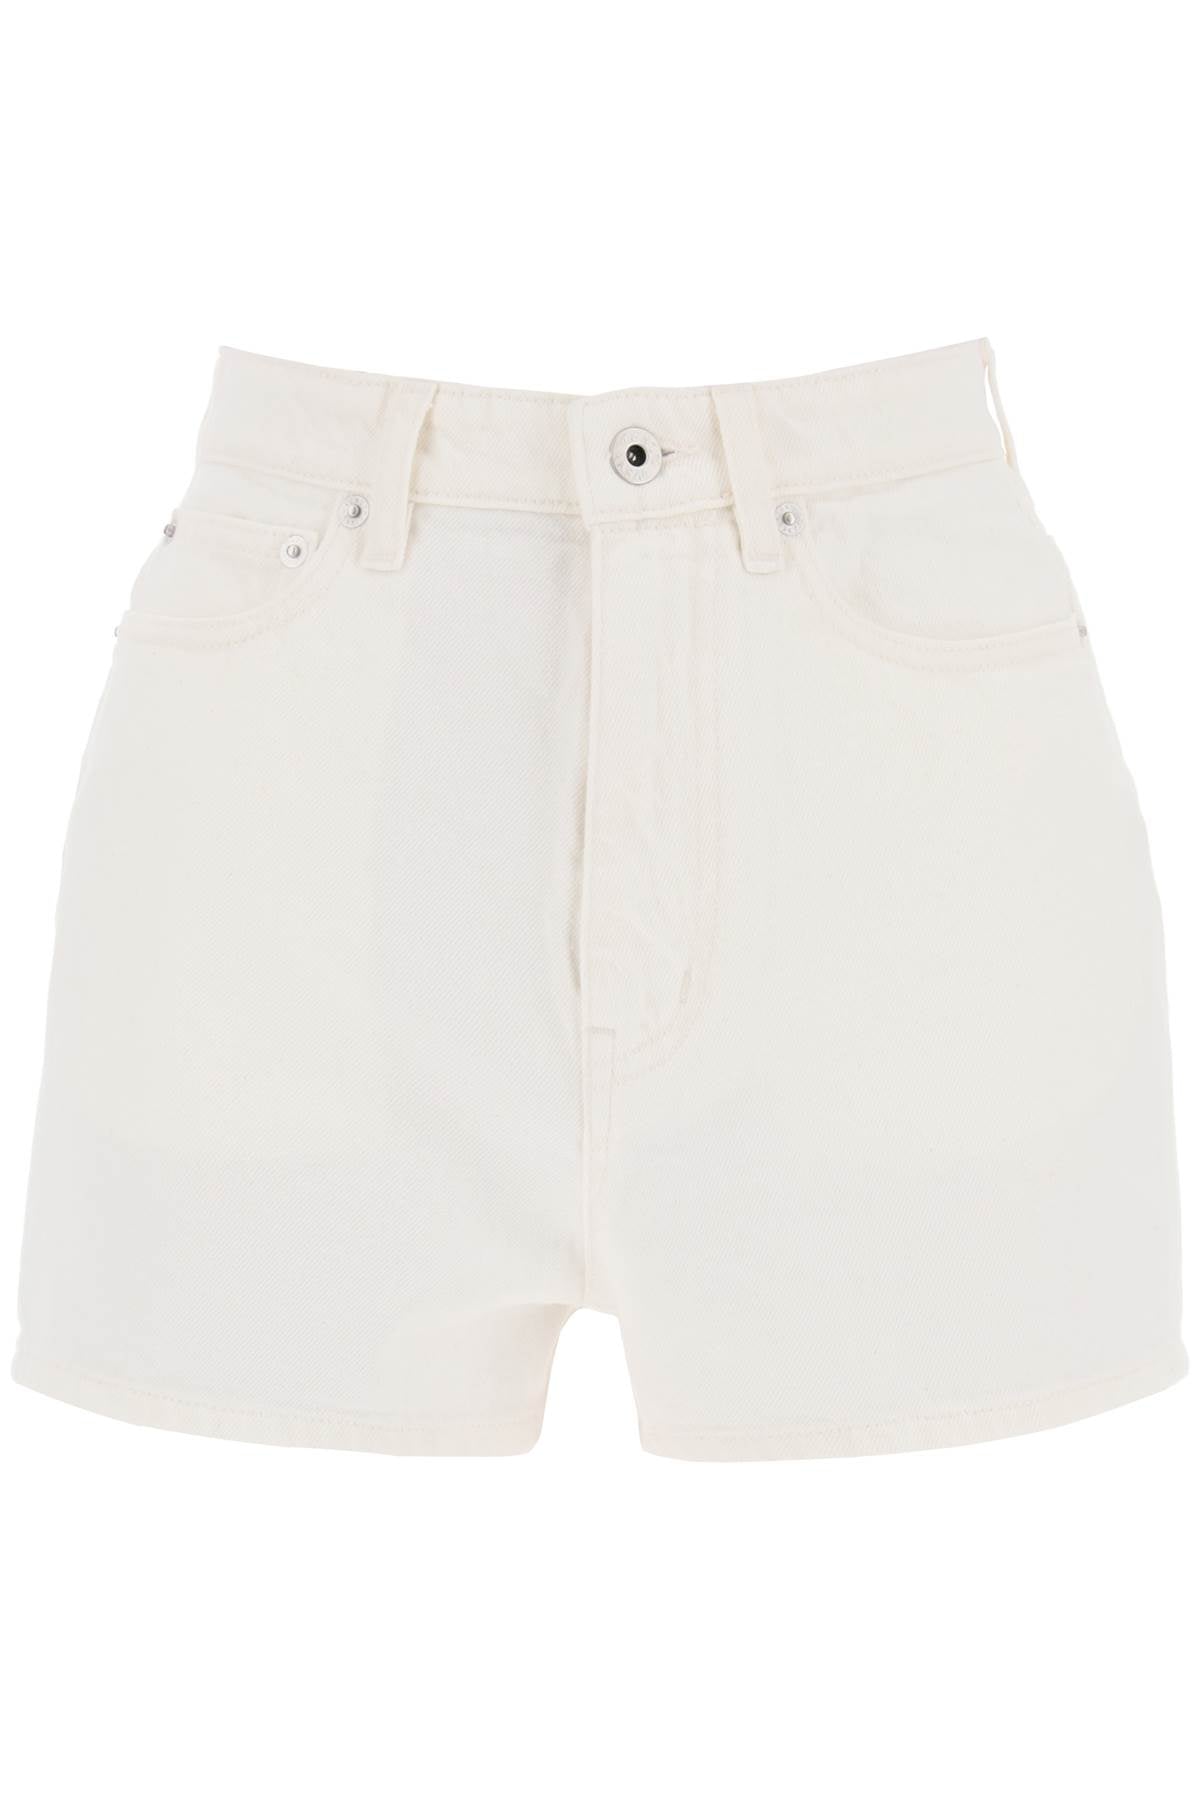 Kenzo Japanese Denim Shorts - 25 Bianco